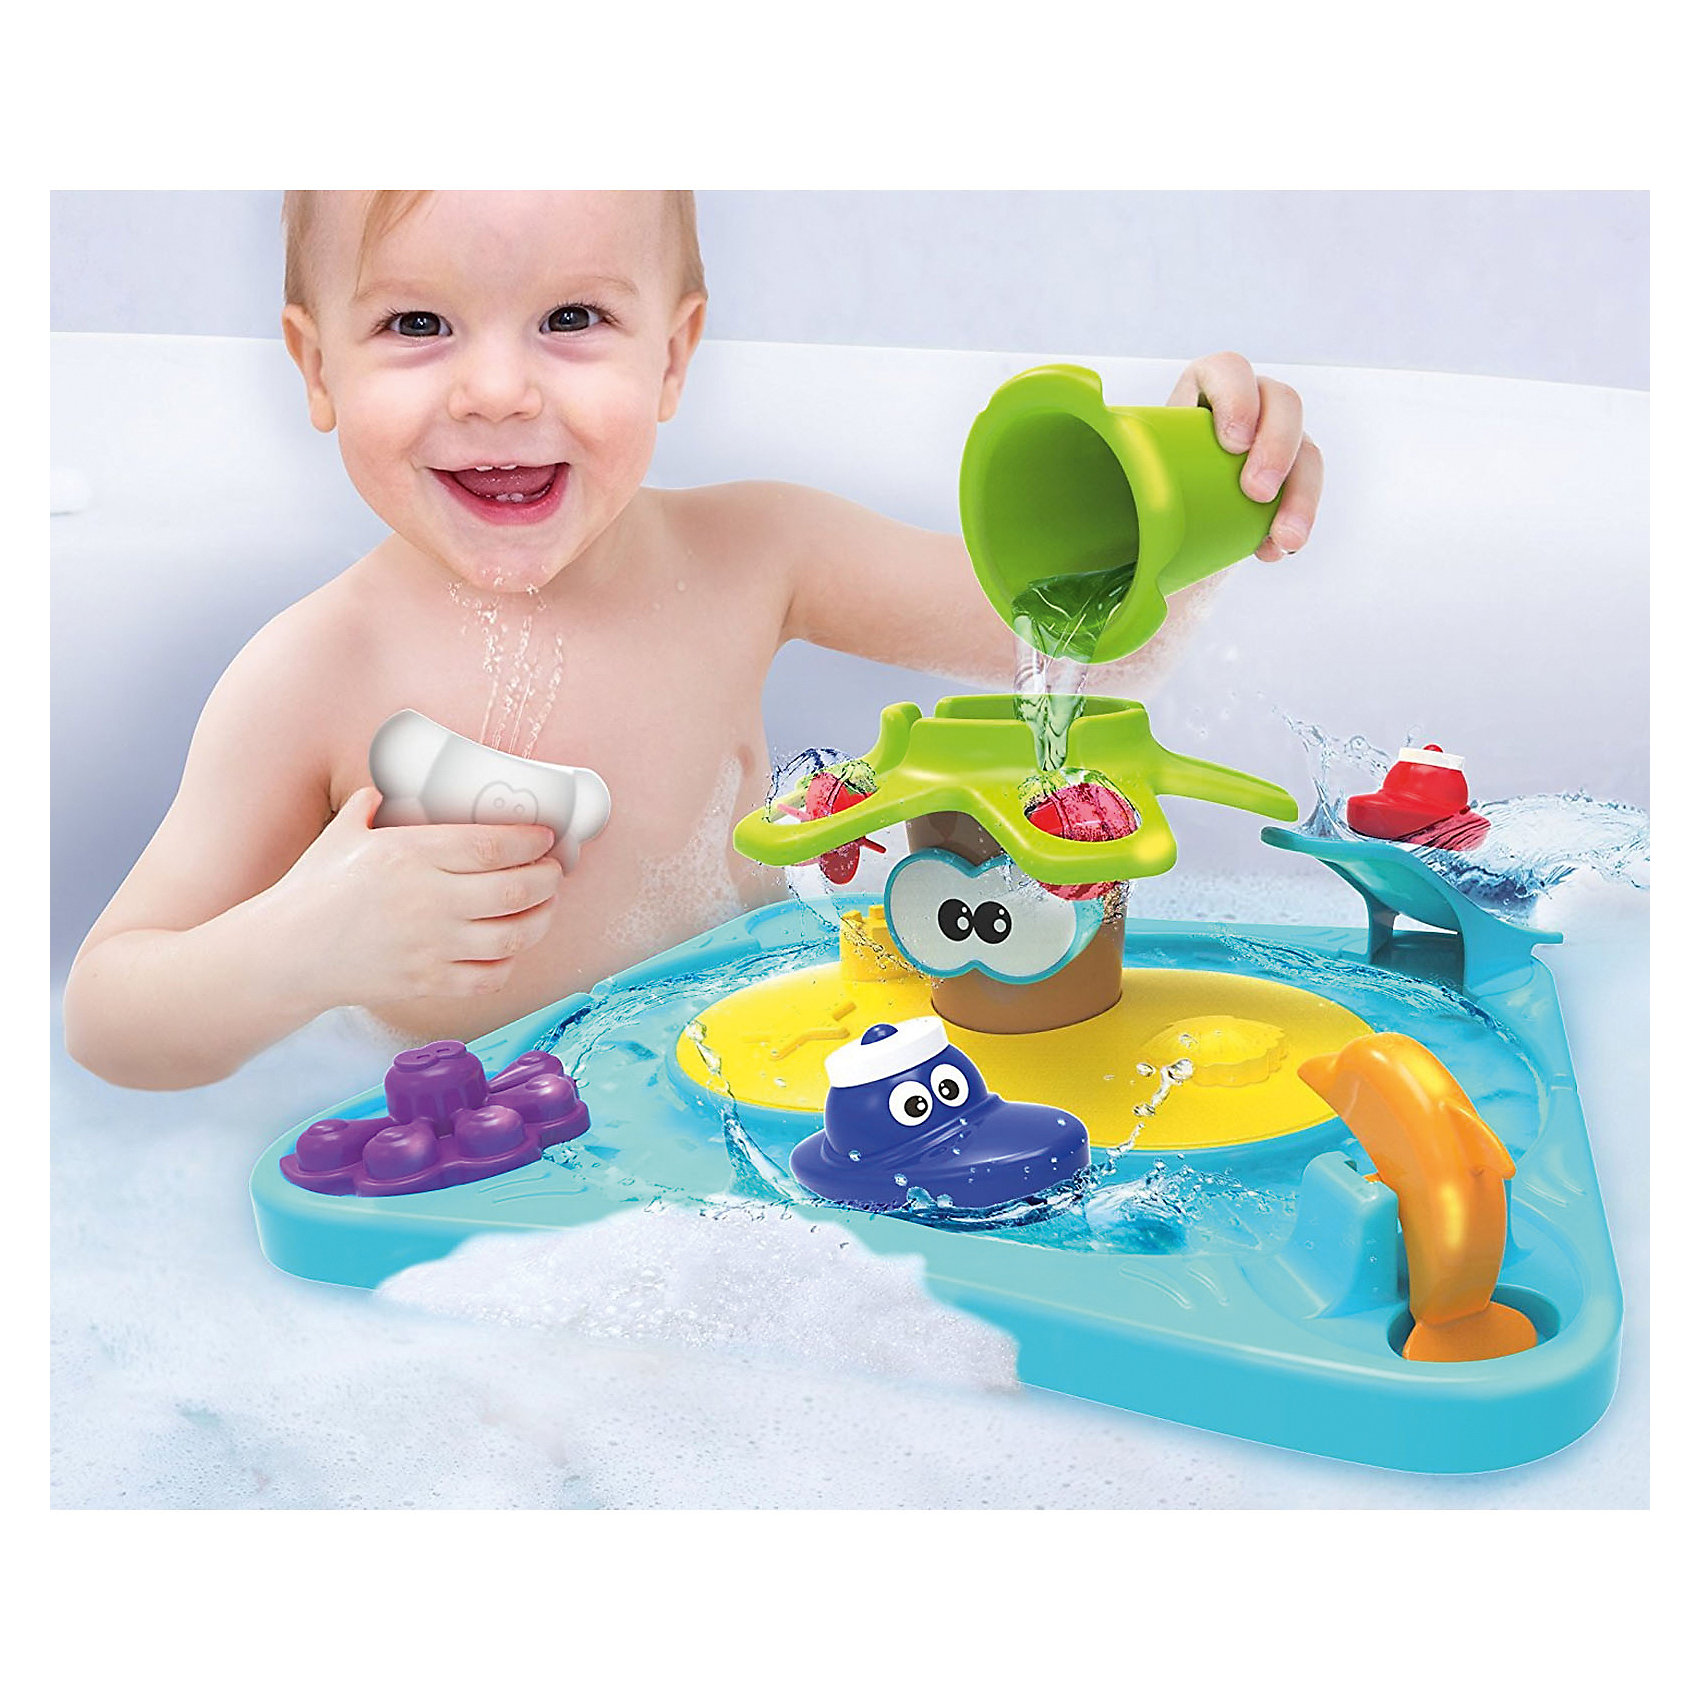 Купить игрушки для ванной. Игрушки для купания. Игрушки в ванную. Интересные игрушки для ванной. Игрушка для купания в ванной.